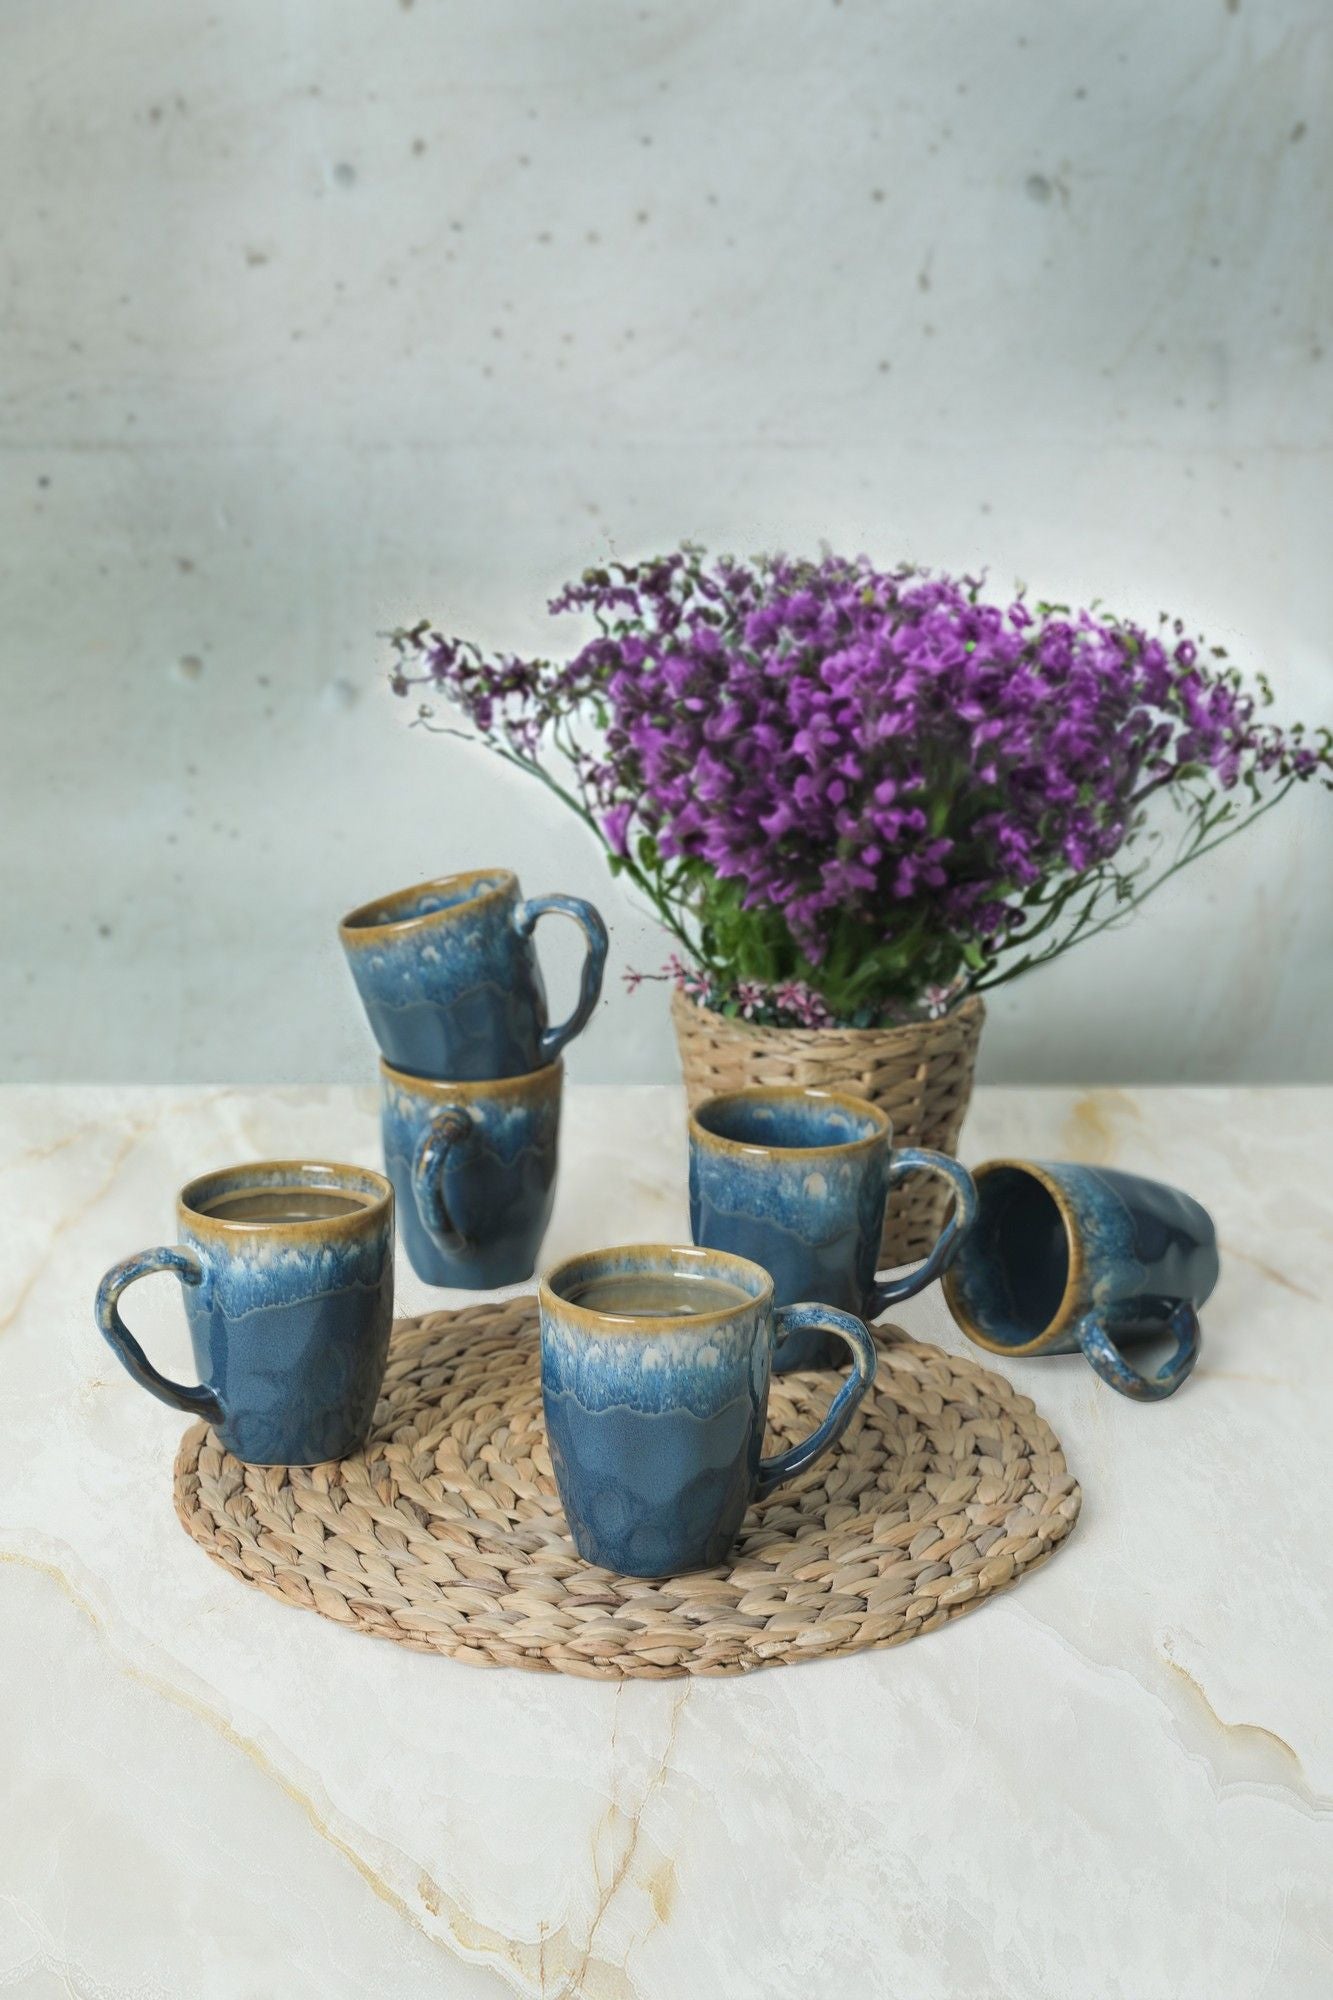 Shizen Q39 - Blue - Mug Set (6 Pieces)